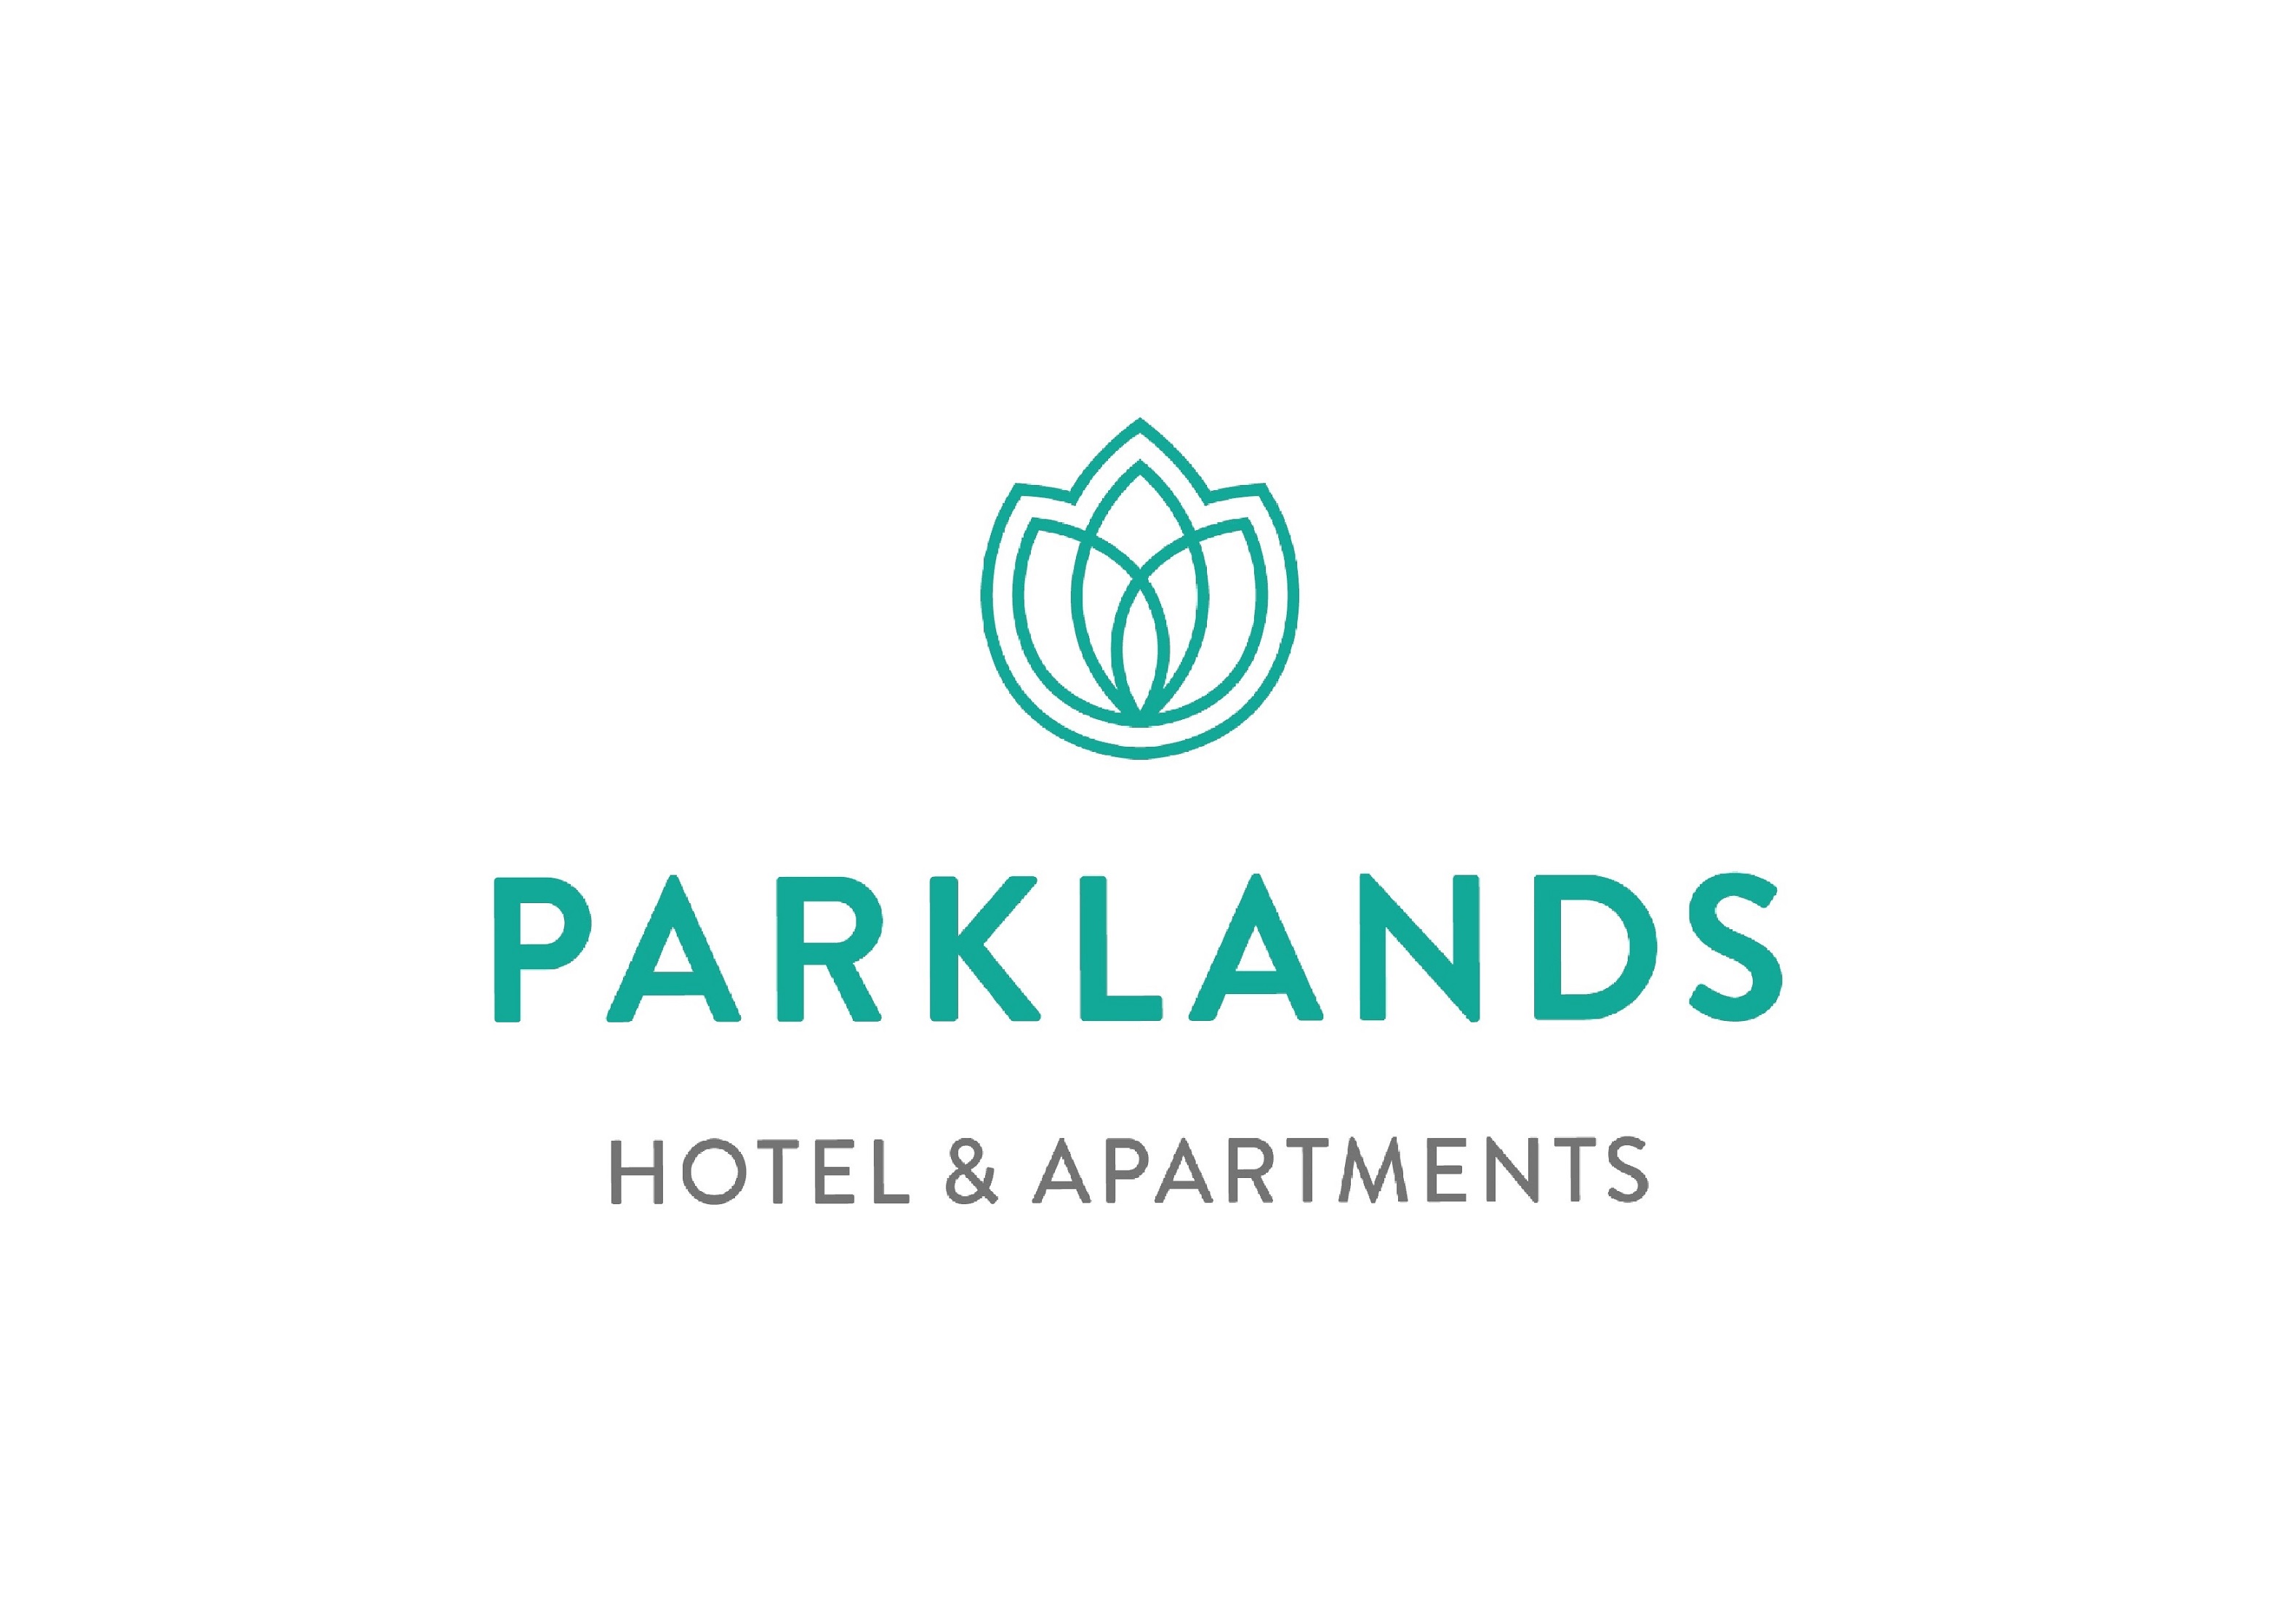 Parklands Hotel amp Apartments - C Tourism